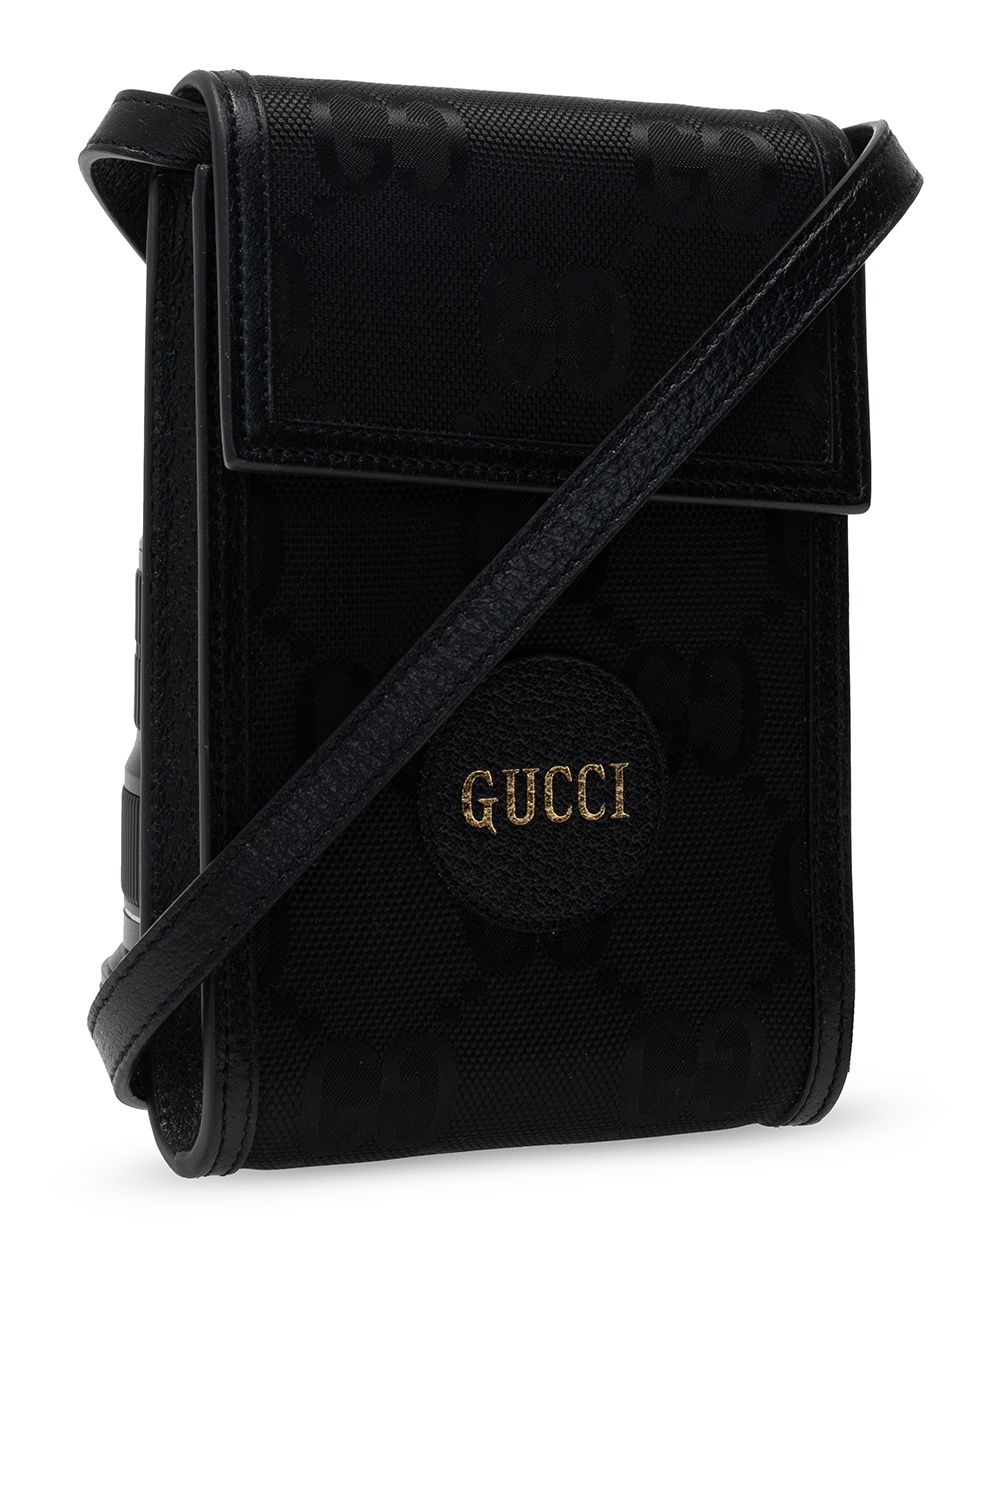 Gucci Gucci G rhombus zip-around wallet